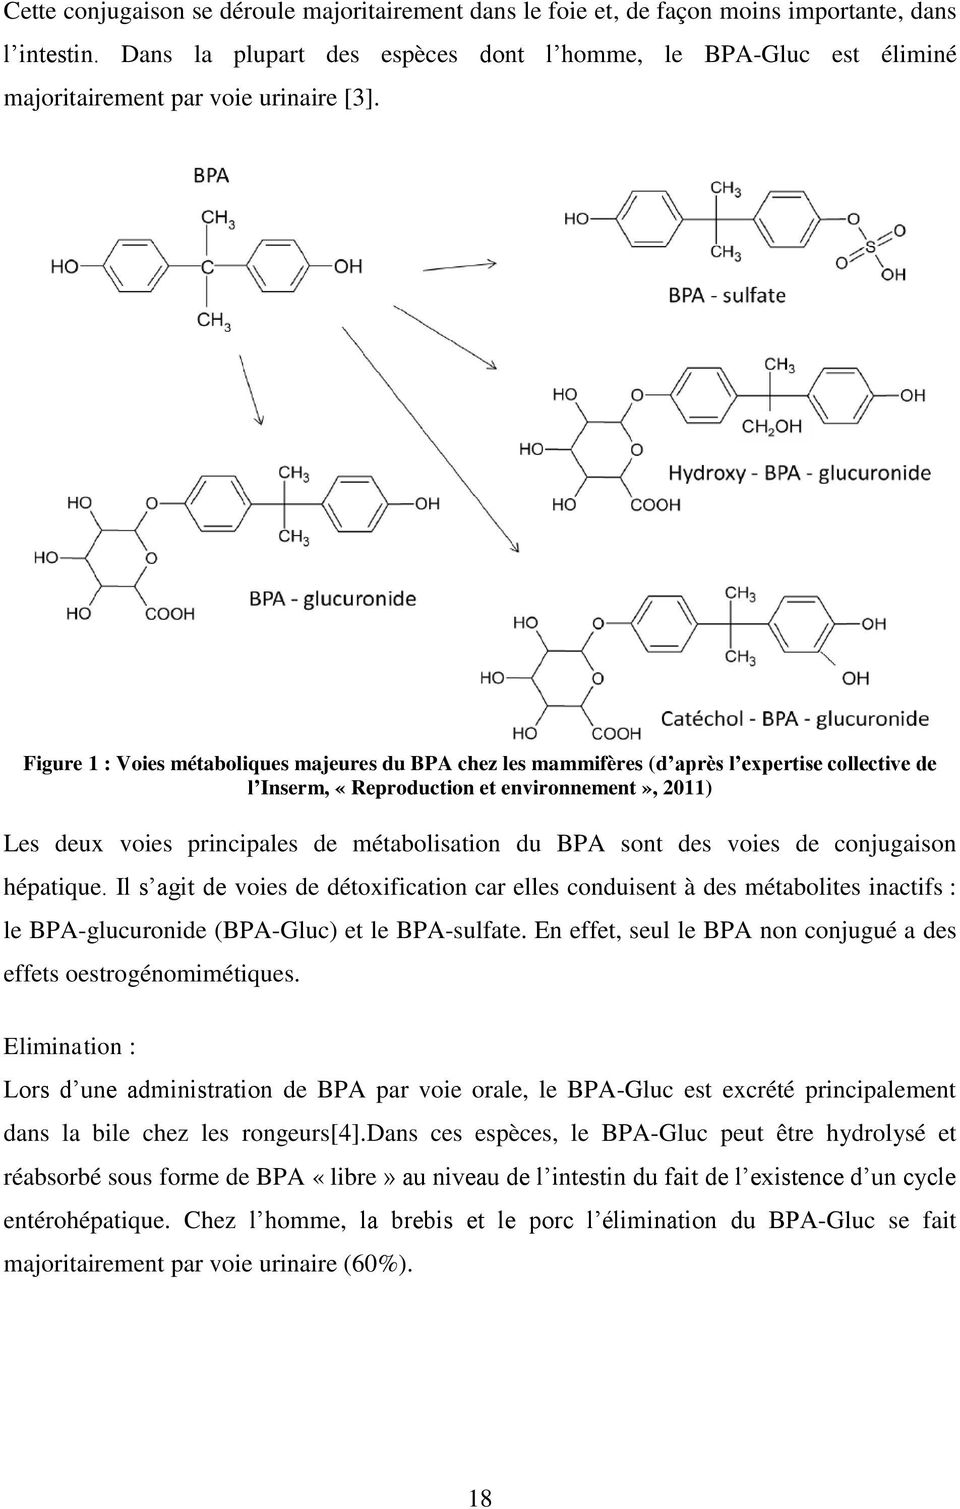 Figure 1 : Voies métaboliques majeures du BPA chez les mammifères (d après l expertise collective de l Inserm, «Reproduction et environnement», 2011) Les deux voies principales de métabolisation du